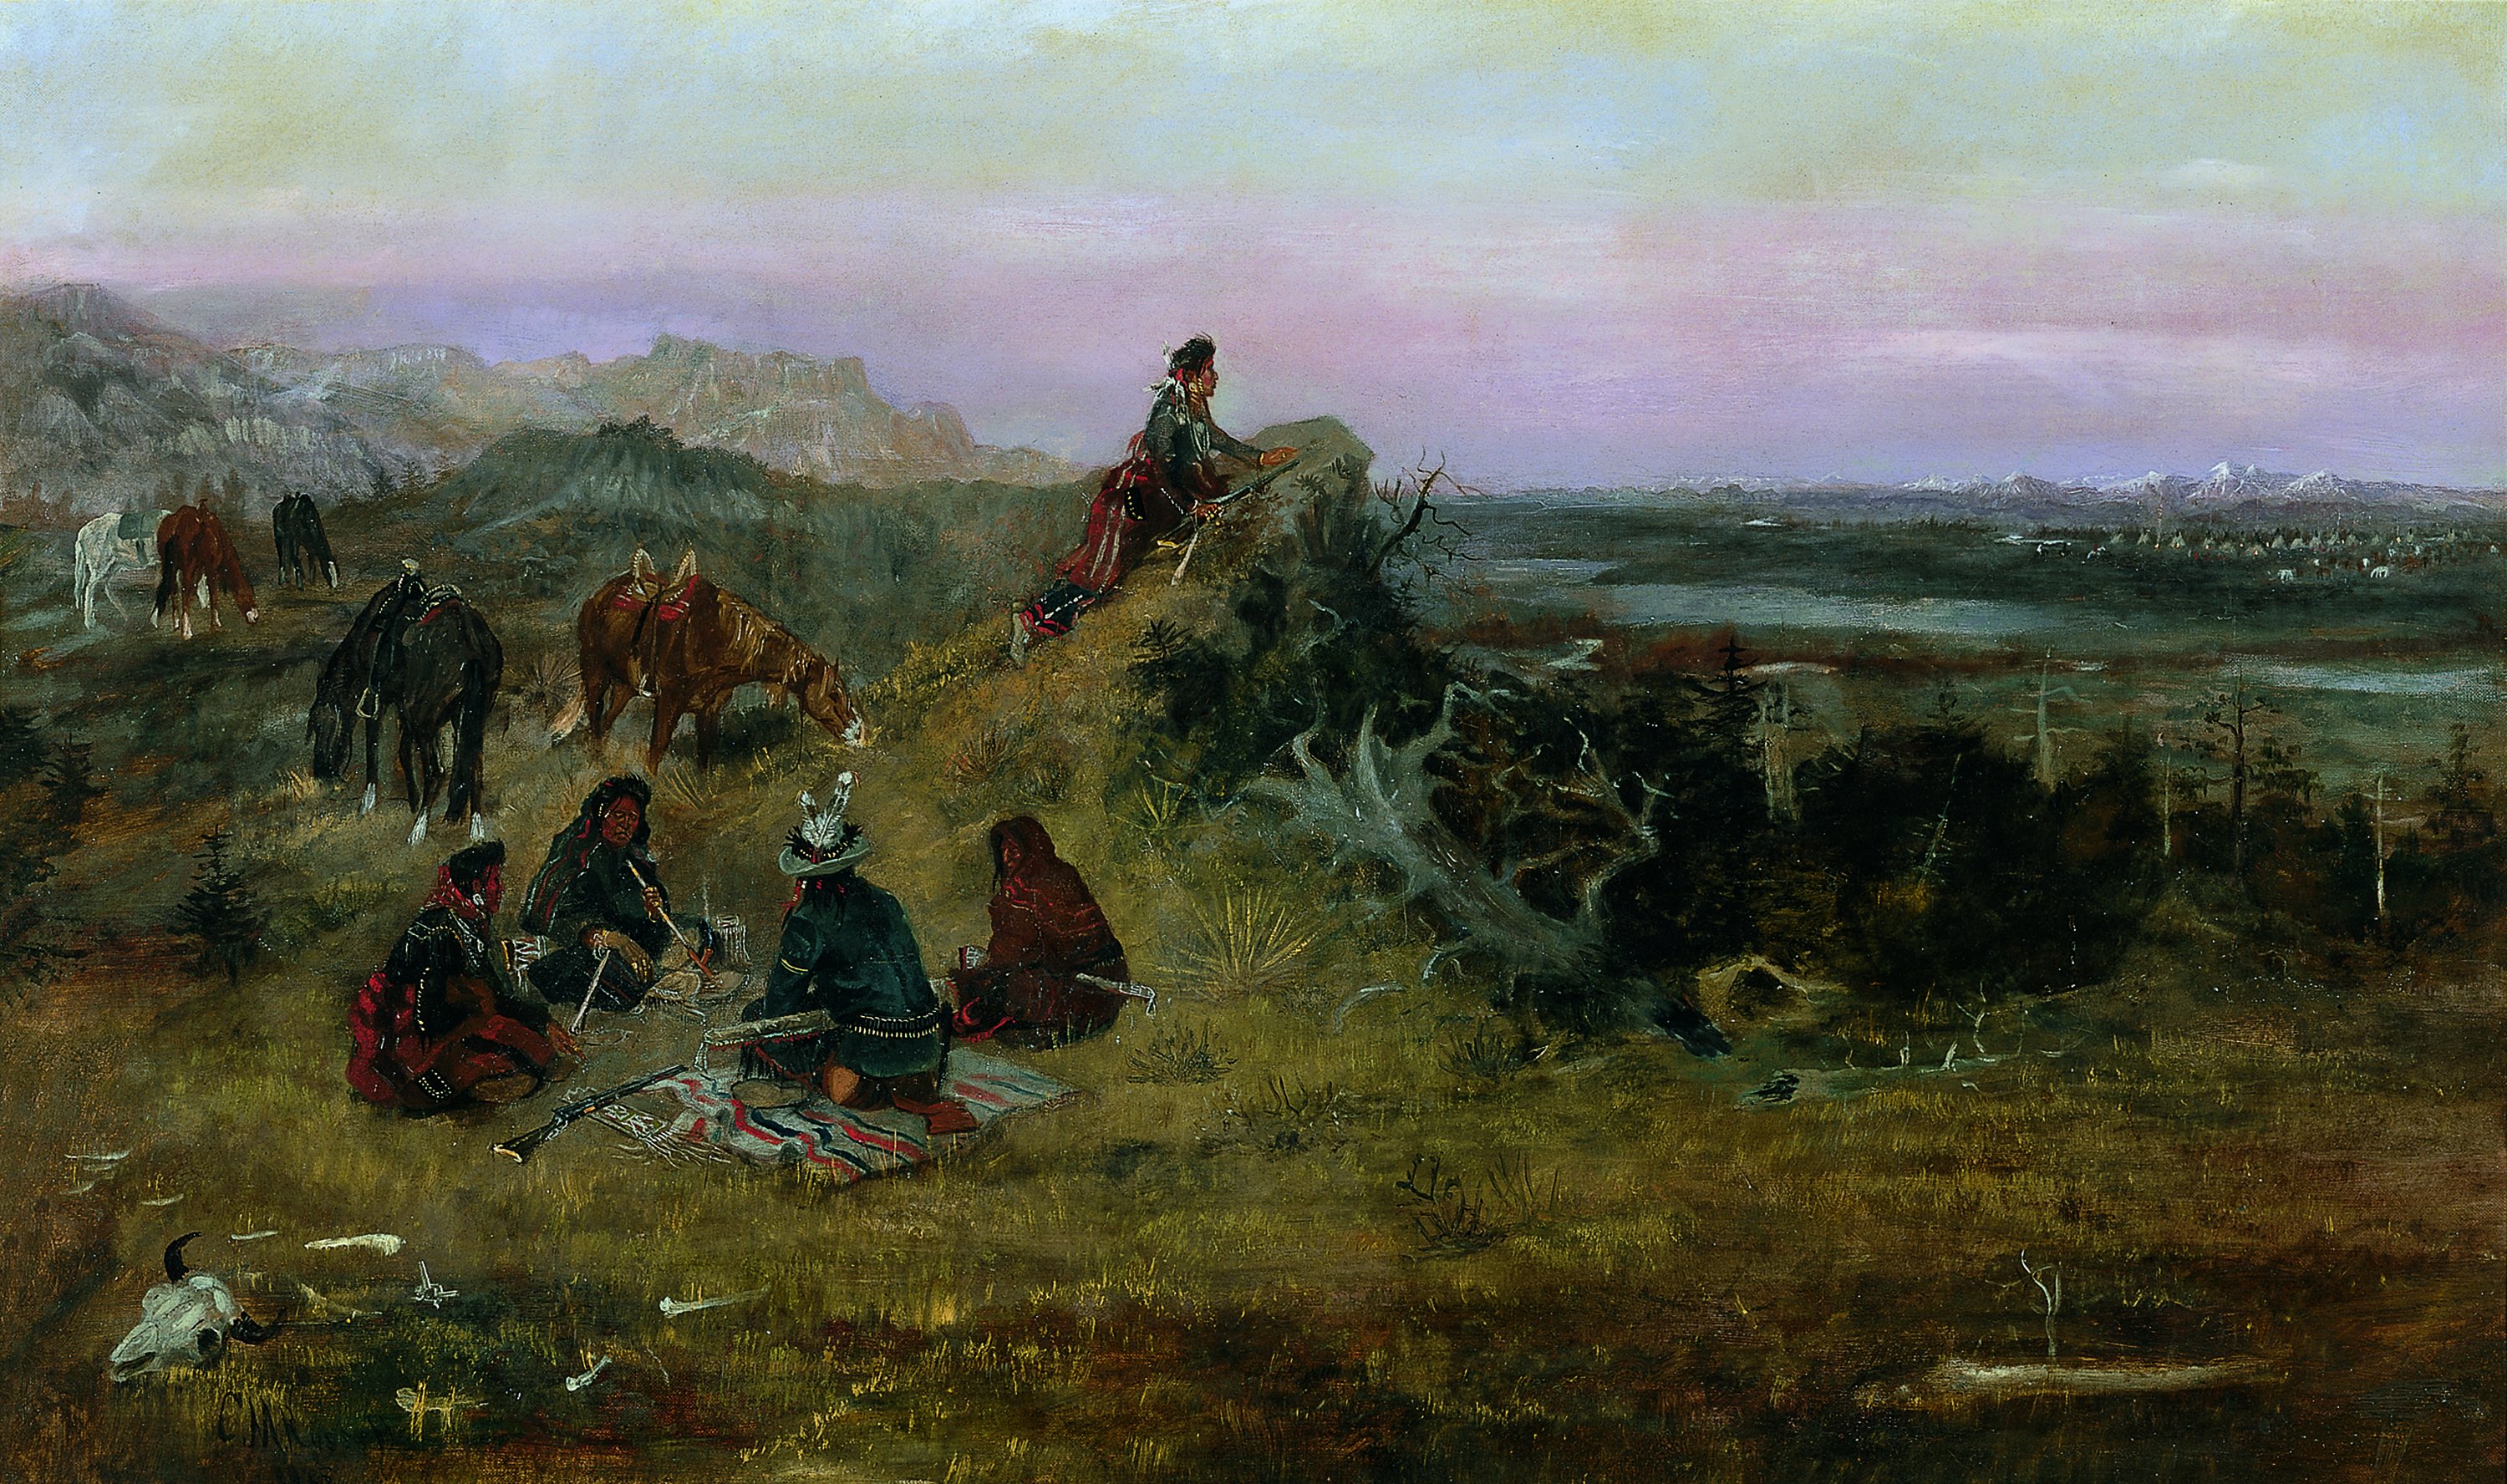 The Piegans preparing to Steal Horses from the Crows. Los "piegan" preparándose para robar caballos a los "crow", 1888